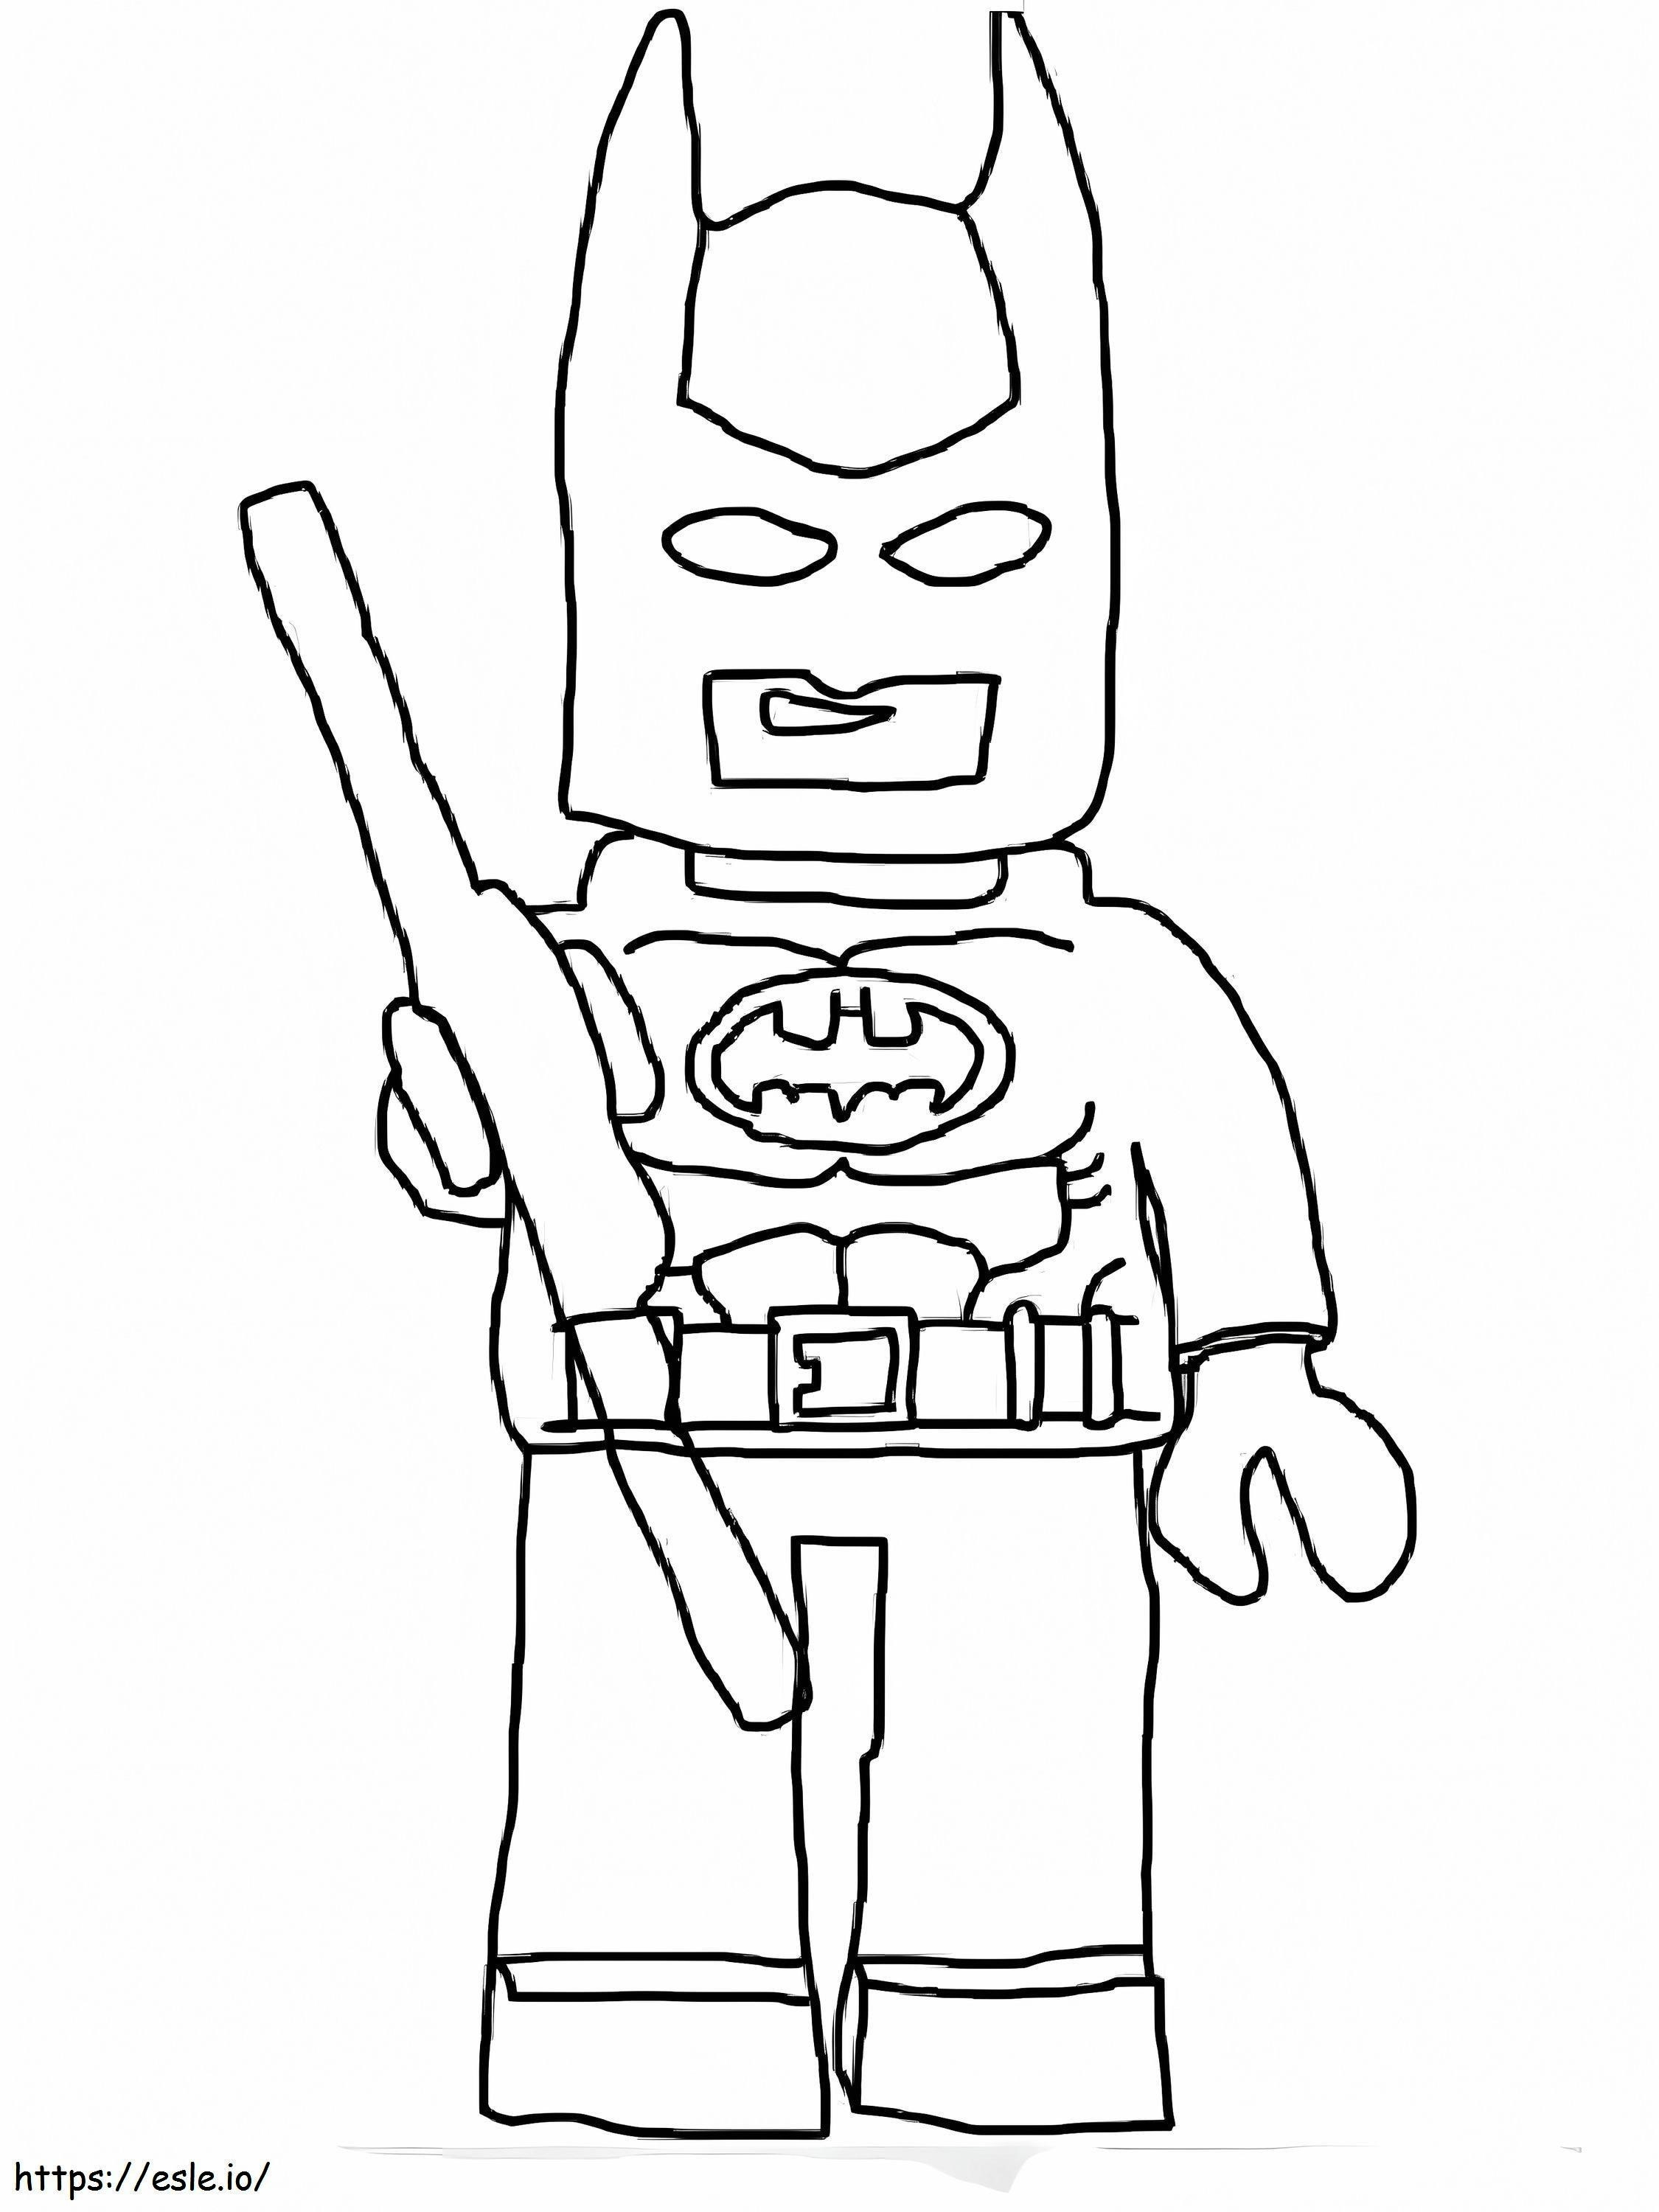 Disegna Batman con in mano un bastone da colorare